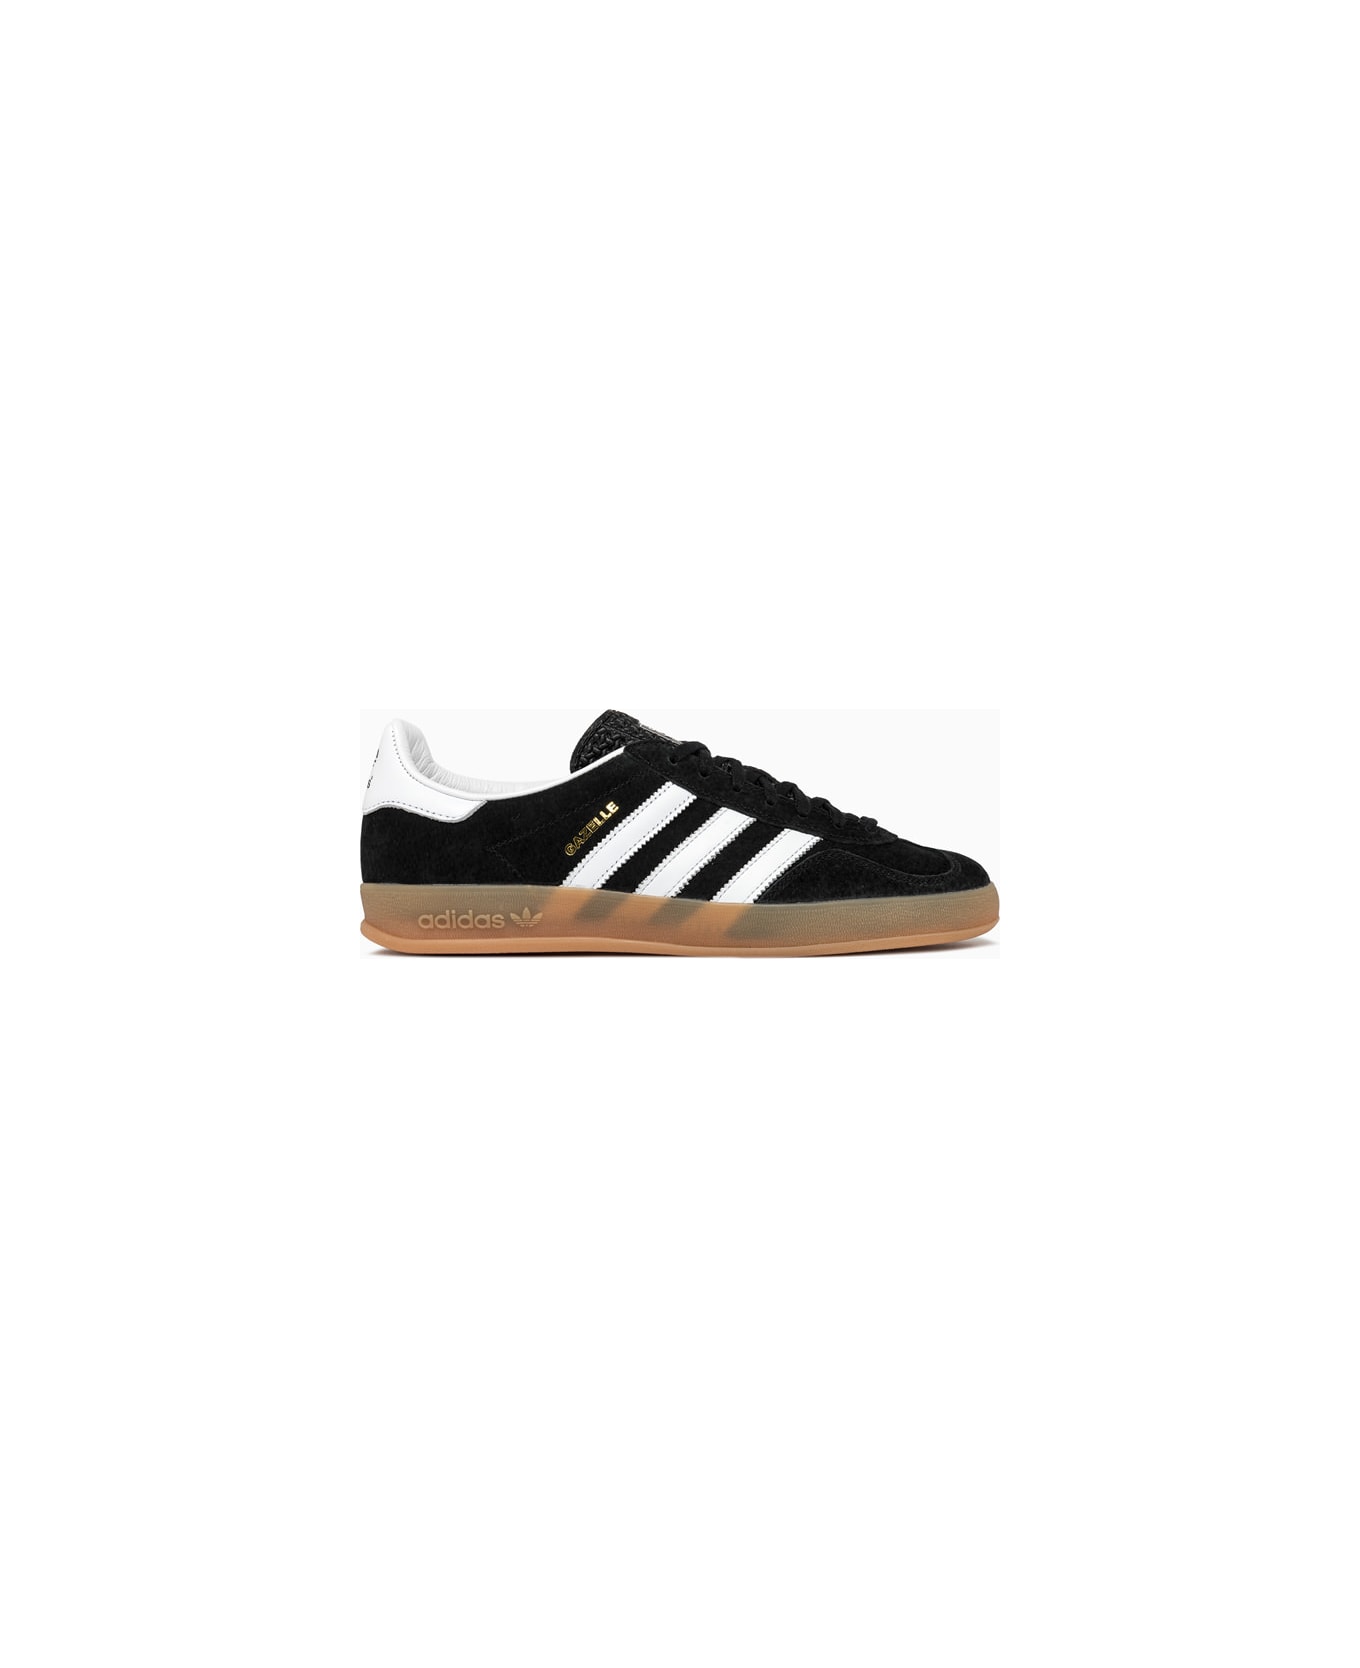 Adidas Originals Gazelle Indoor Sneakers H06259 - Cblack/ftwwht/cblack